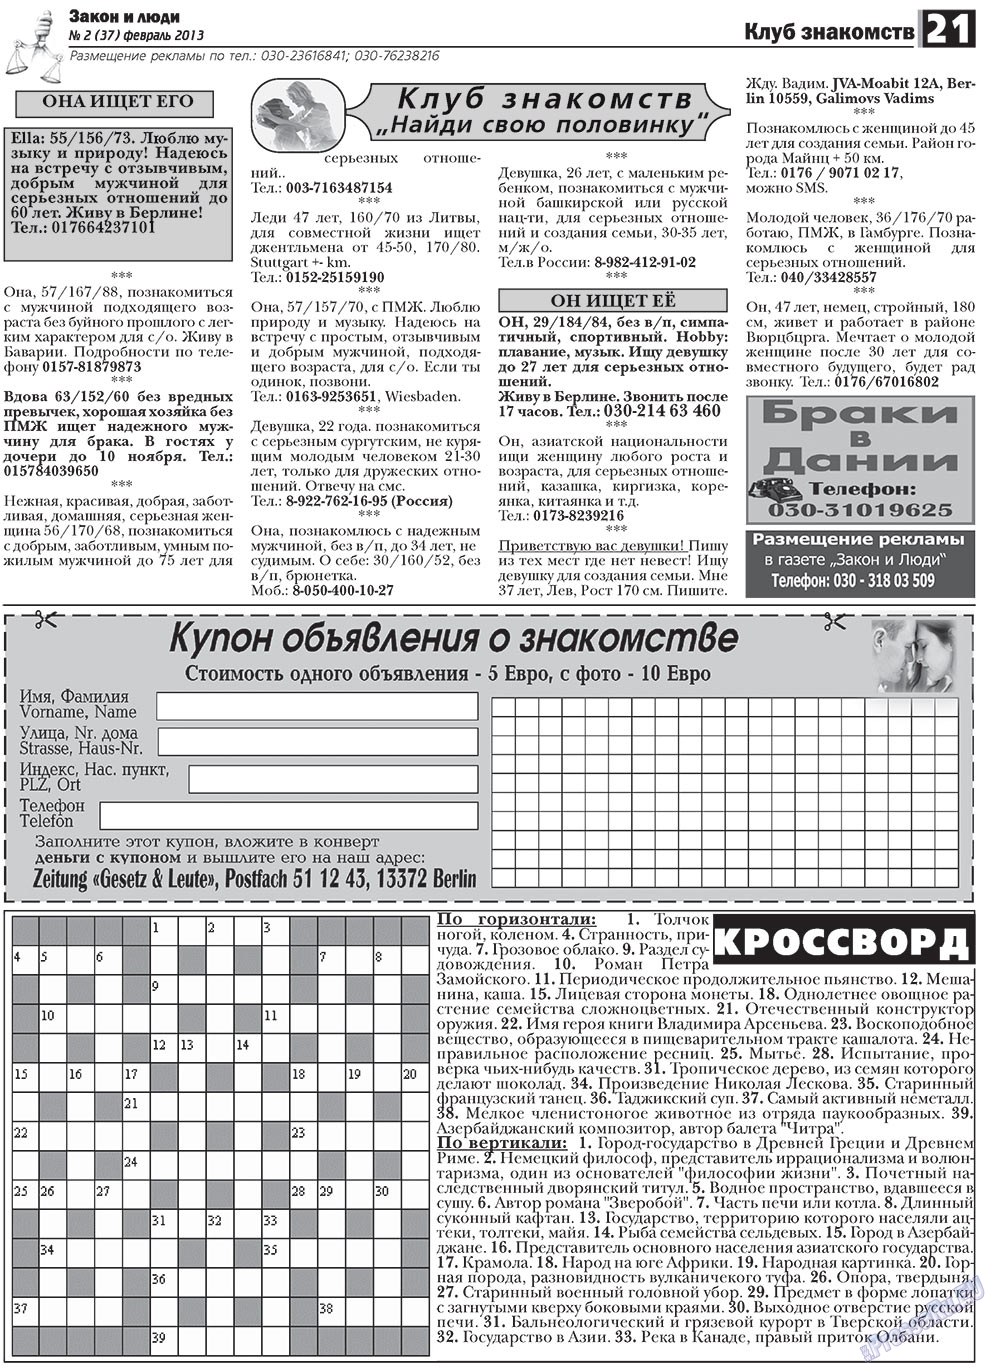 Закон и люди, газета. 2013 №2 стр.21